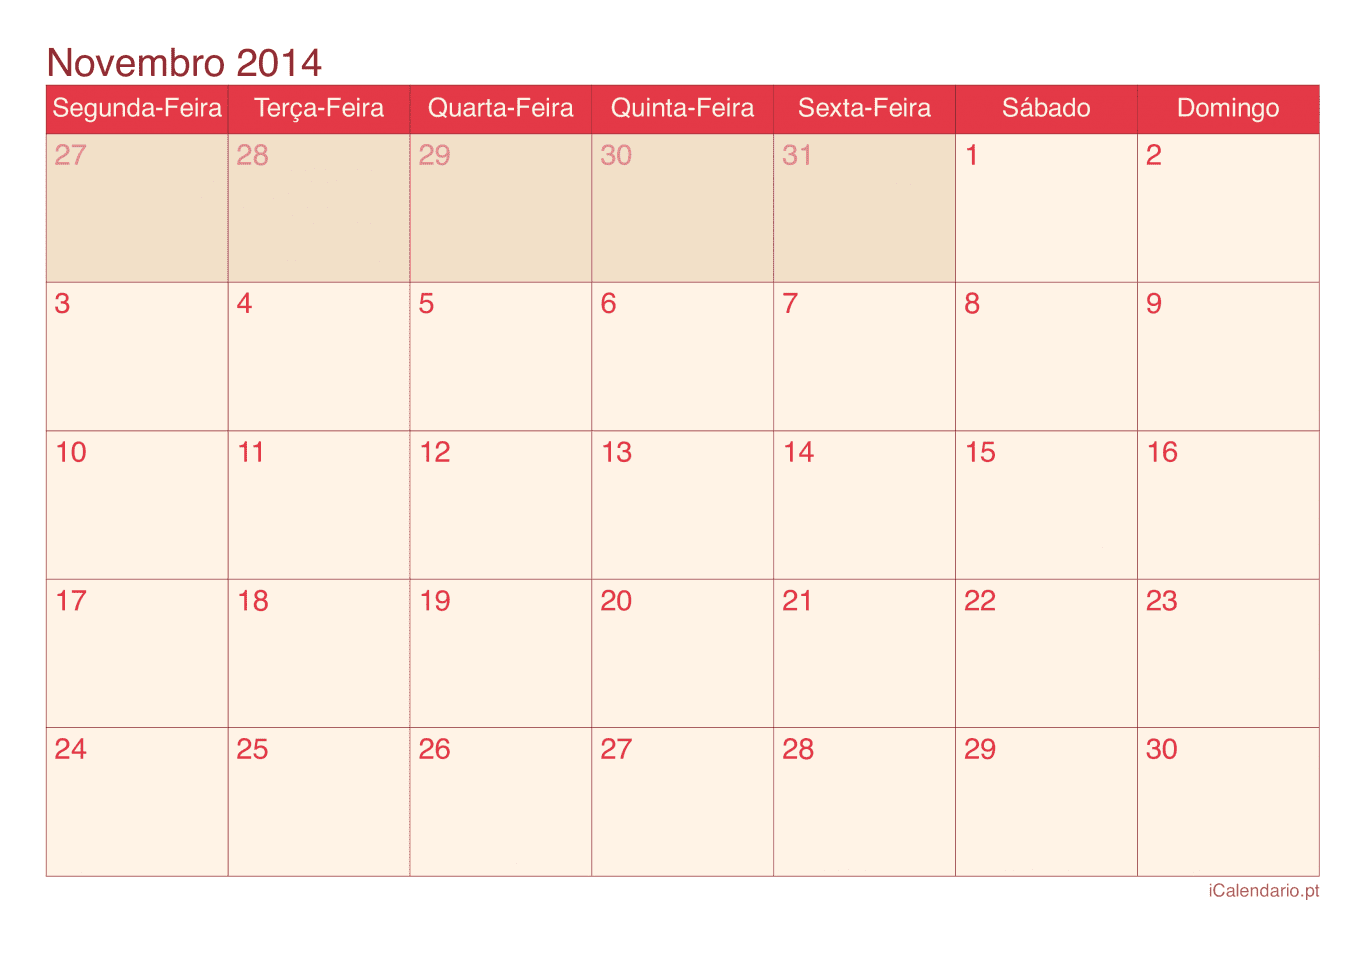 Calendário de novembro 2014 - Cherry